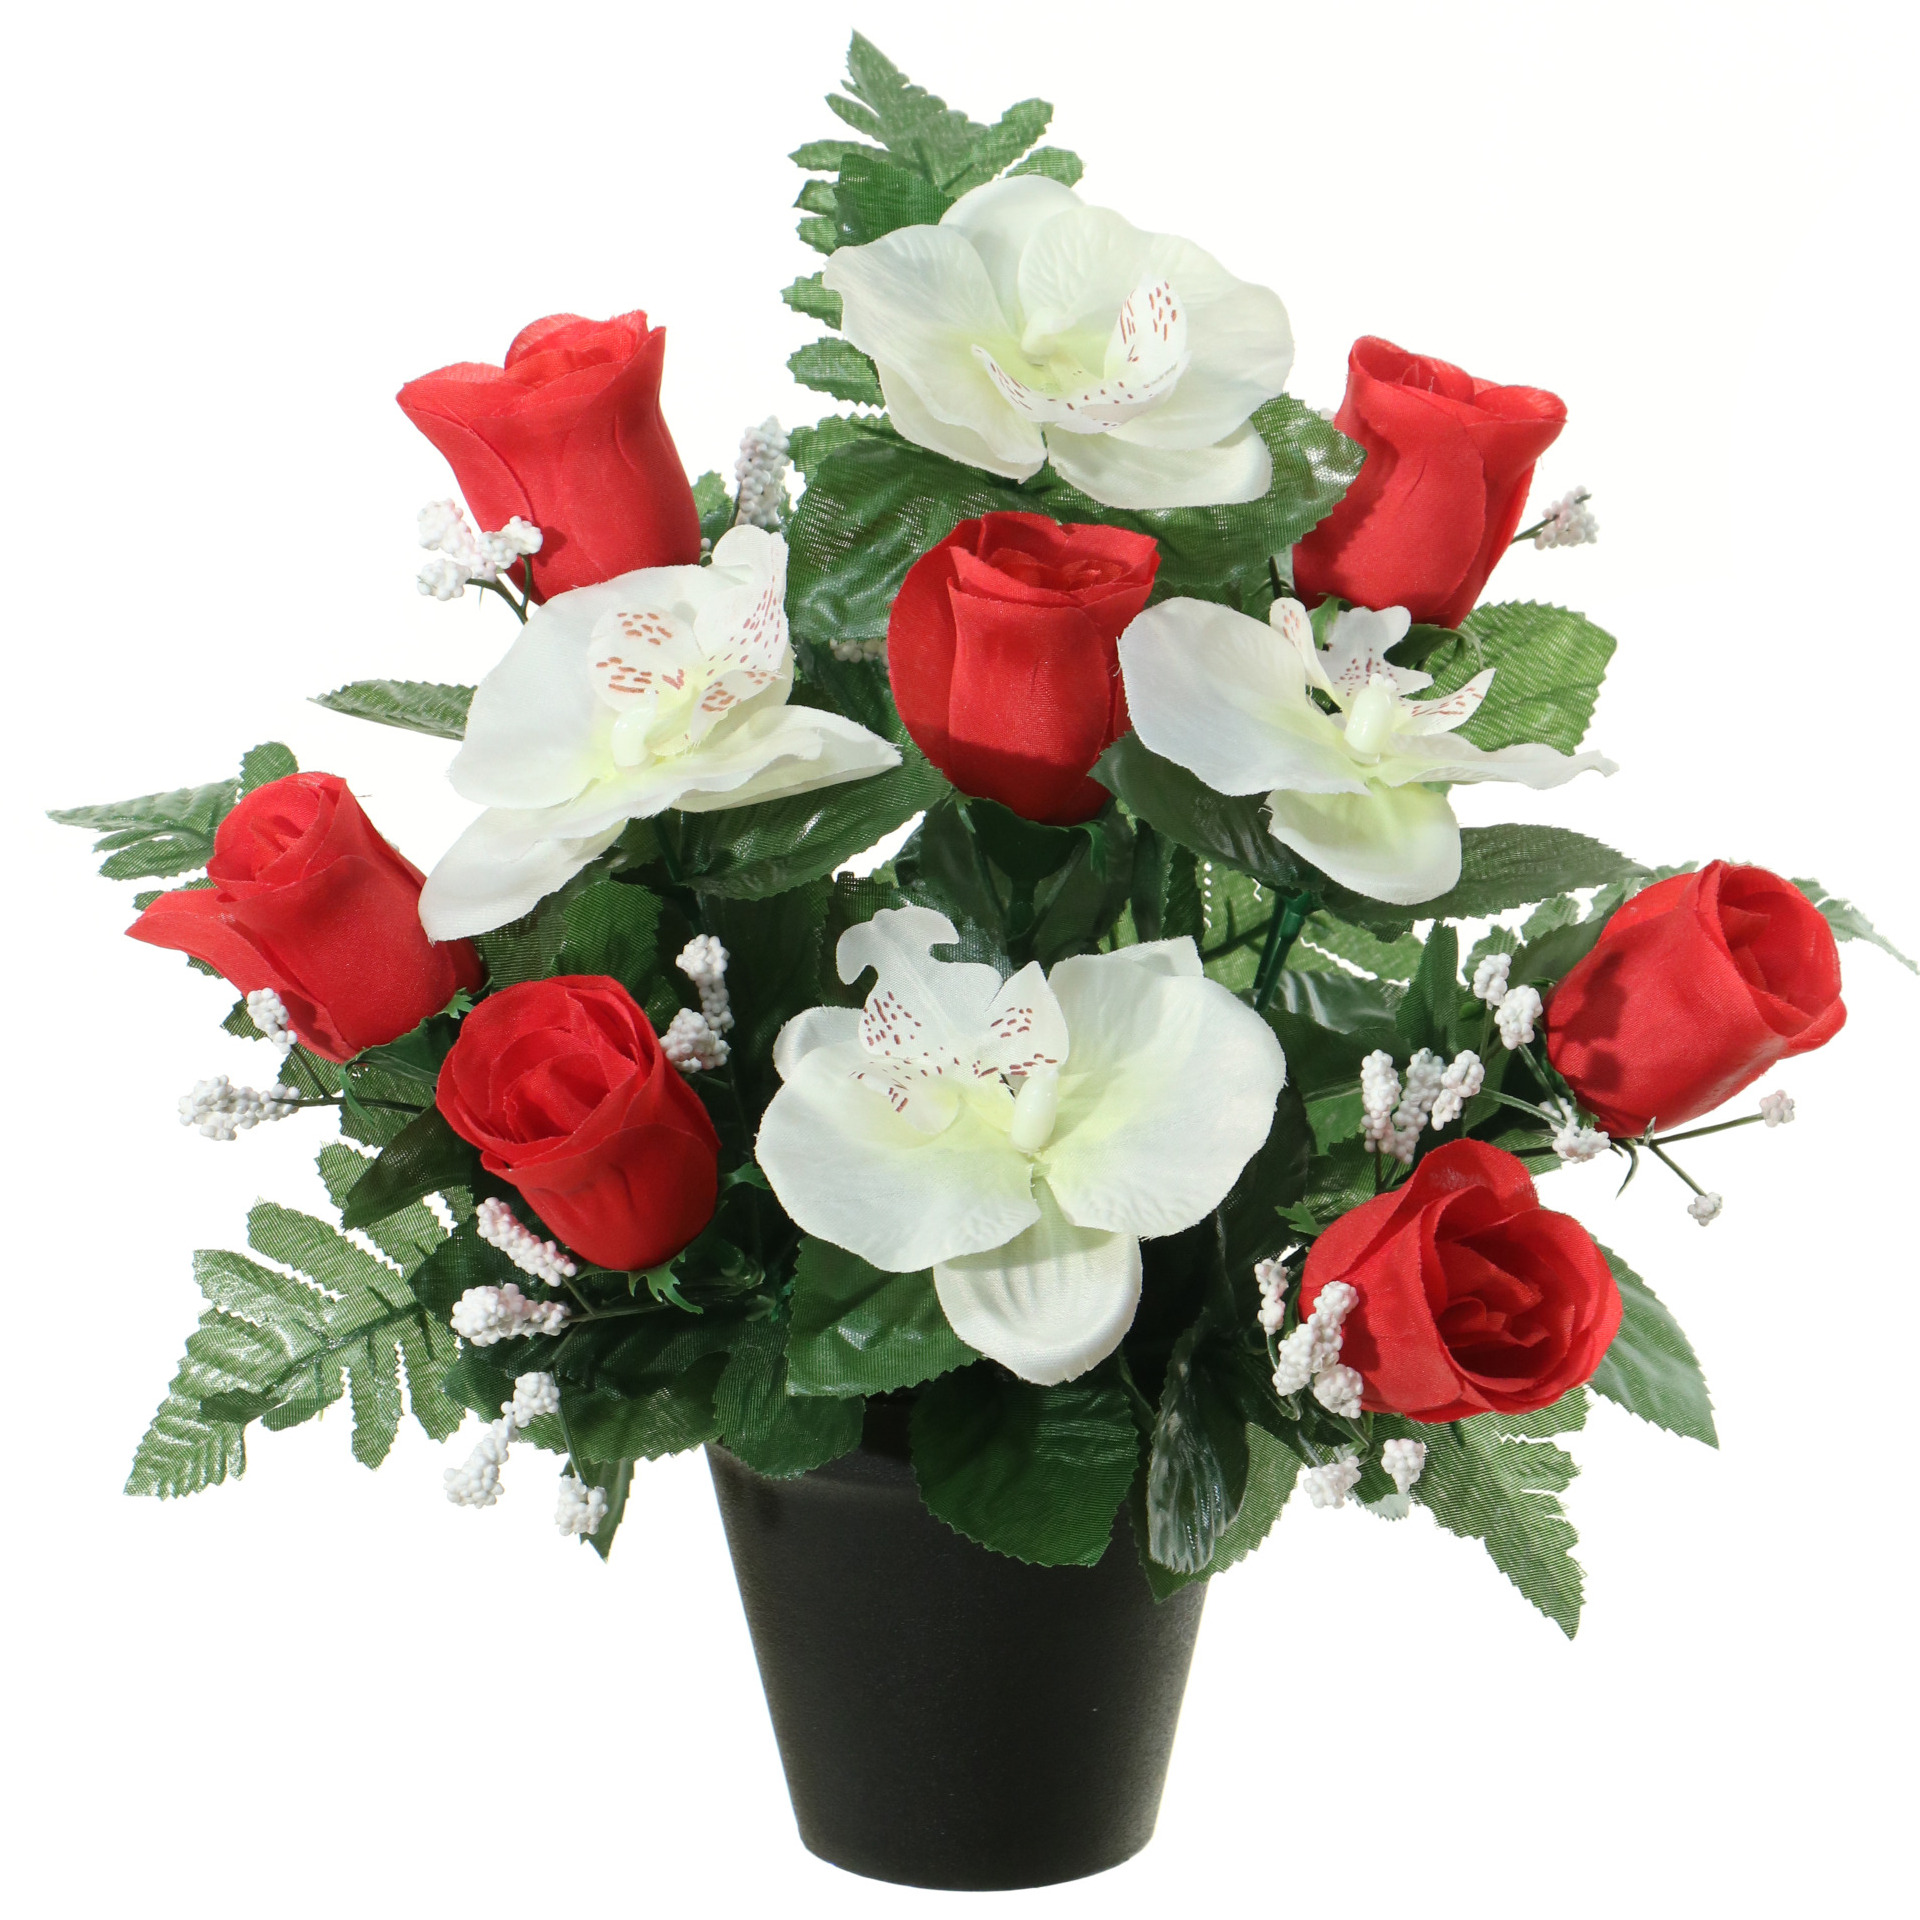 Kunstbloemen plantje in pot wit-rood 28 cm Bloemstuk ornament rood-bladgroen